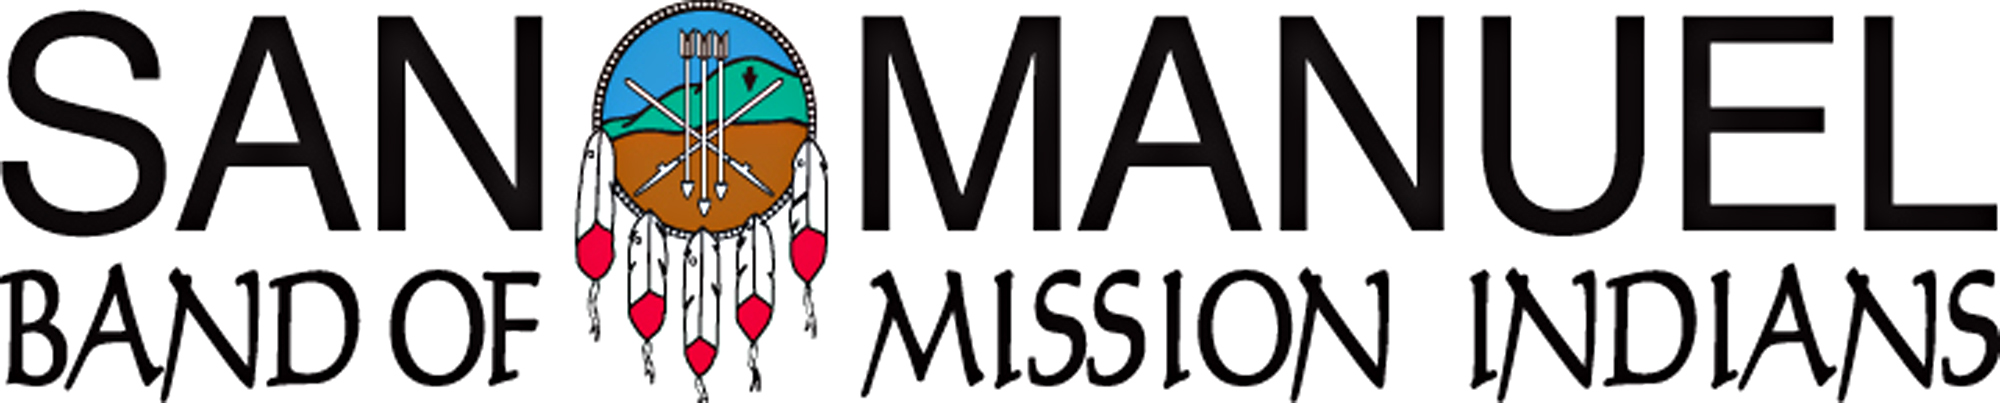 San Manuel Band of Mission Indian Logo